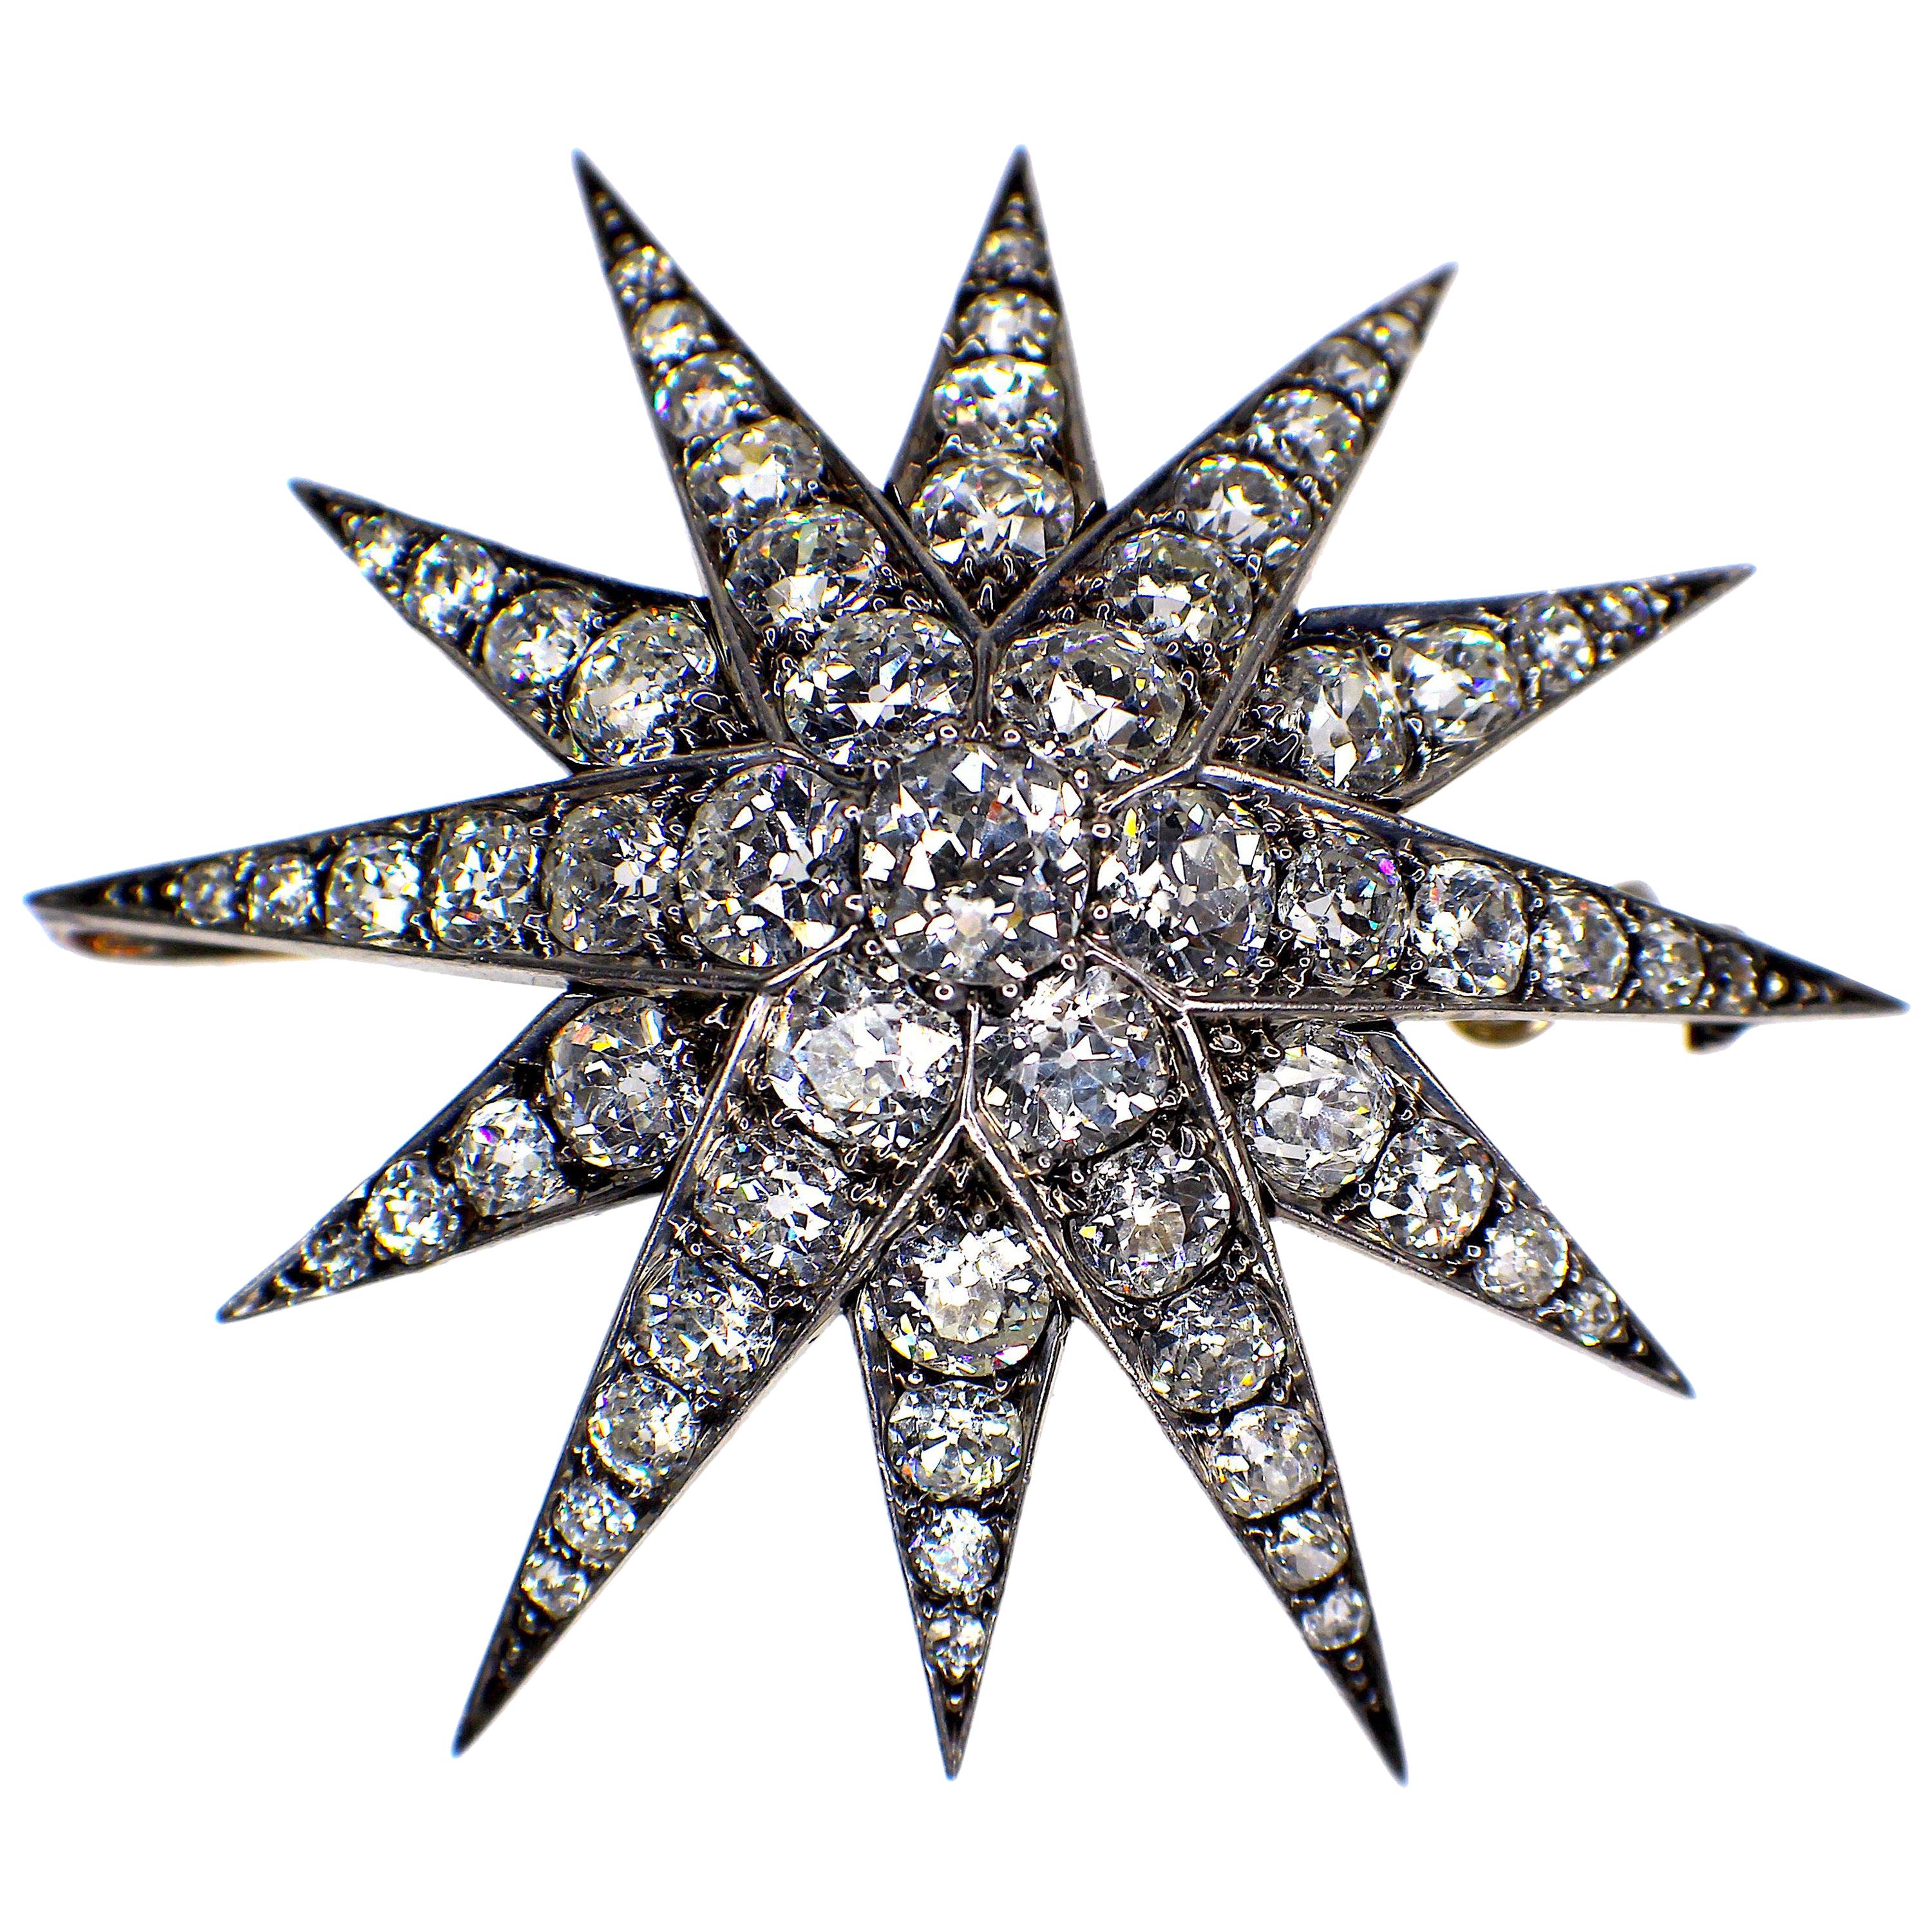 Gemolithos Antique Diamond Star Pendant, 1880s, with Nice Bright Diamonds